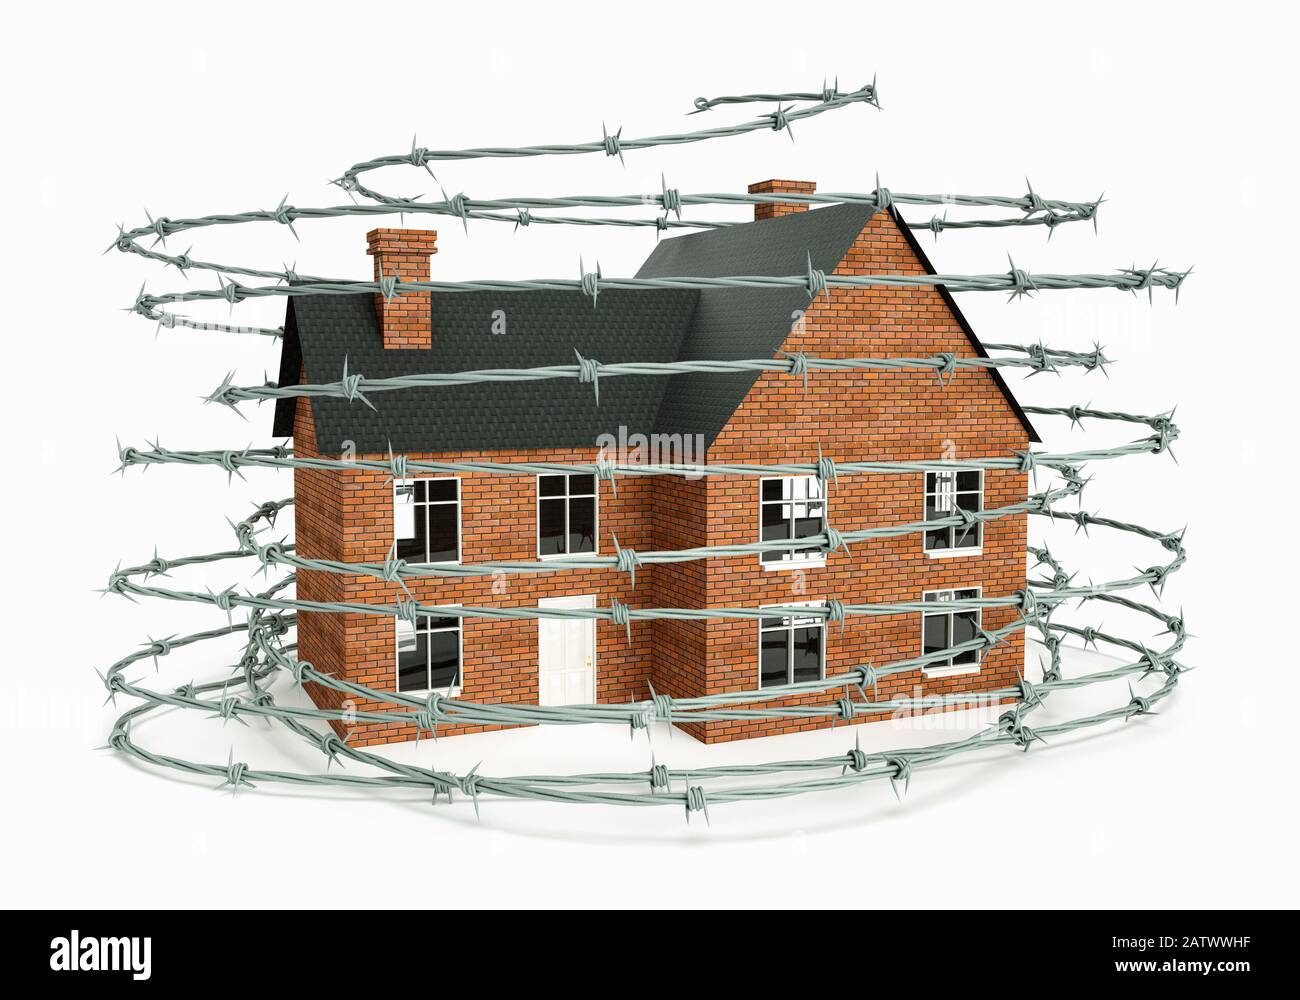 Assurance habitation ou concept de sécurité à la maison, une maison indépendante enveloppée dans un fil barbelé Banque D'Images